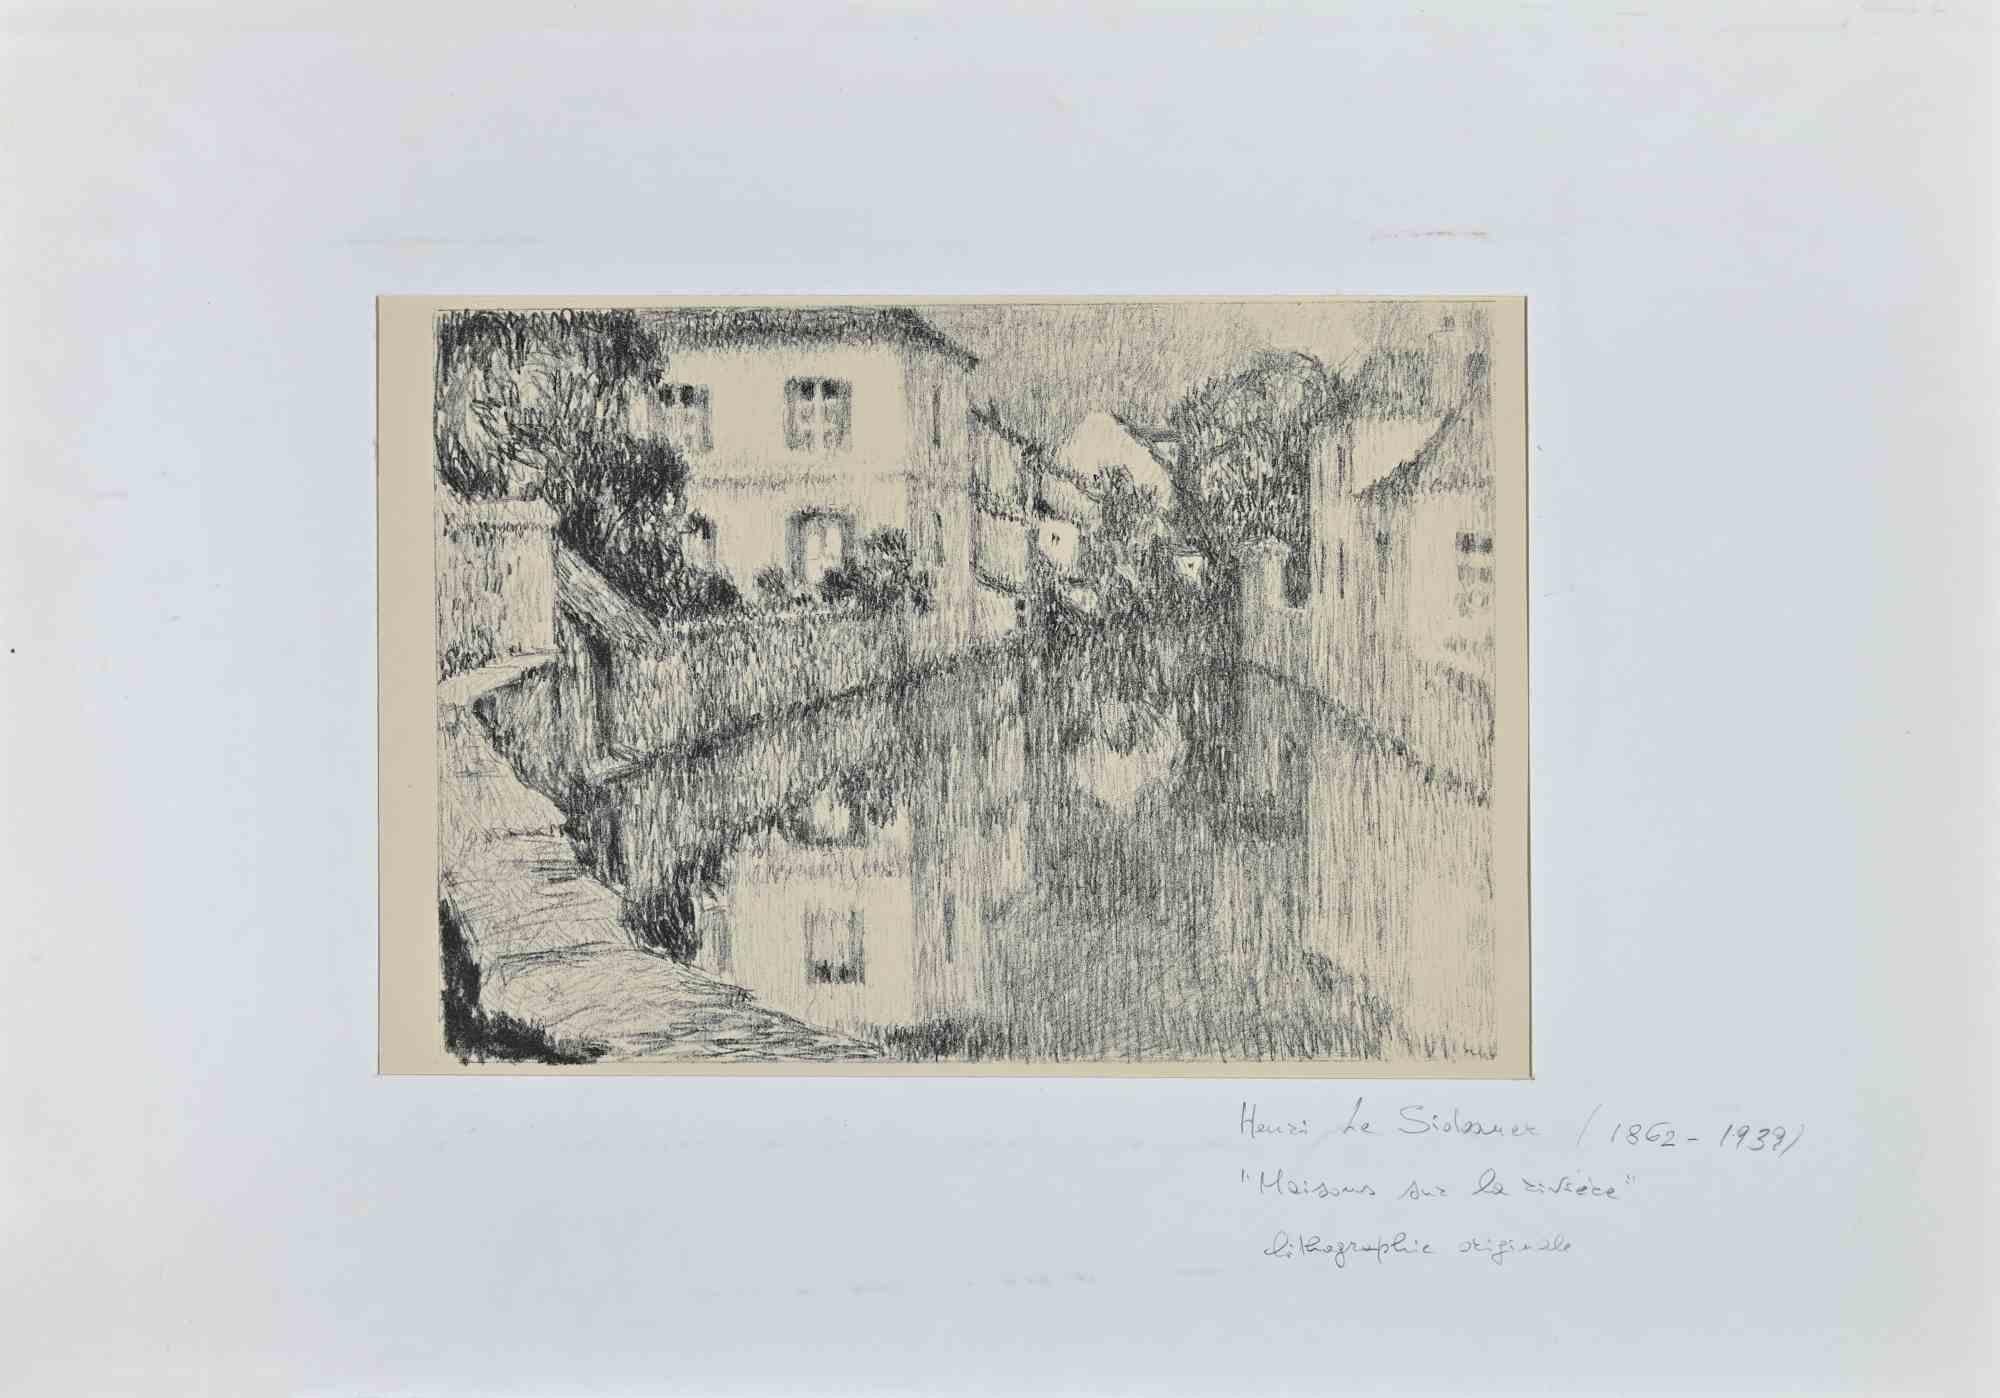 Maisons sur la Rivière - Lithograph by H. Le Sildaner - Early 20th Century - Print by Henri Le Sidaner